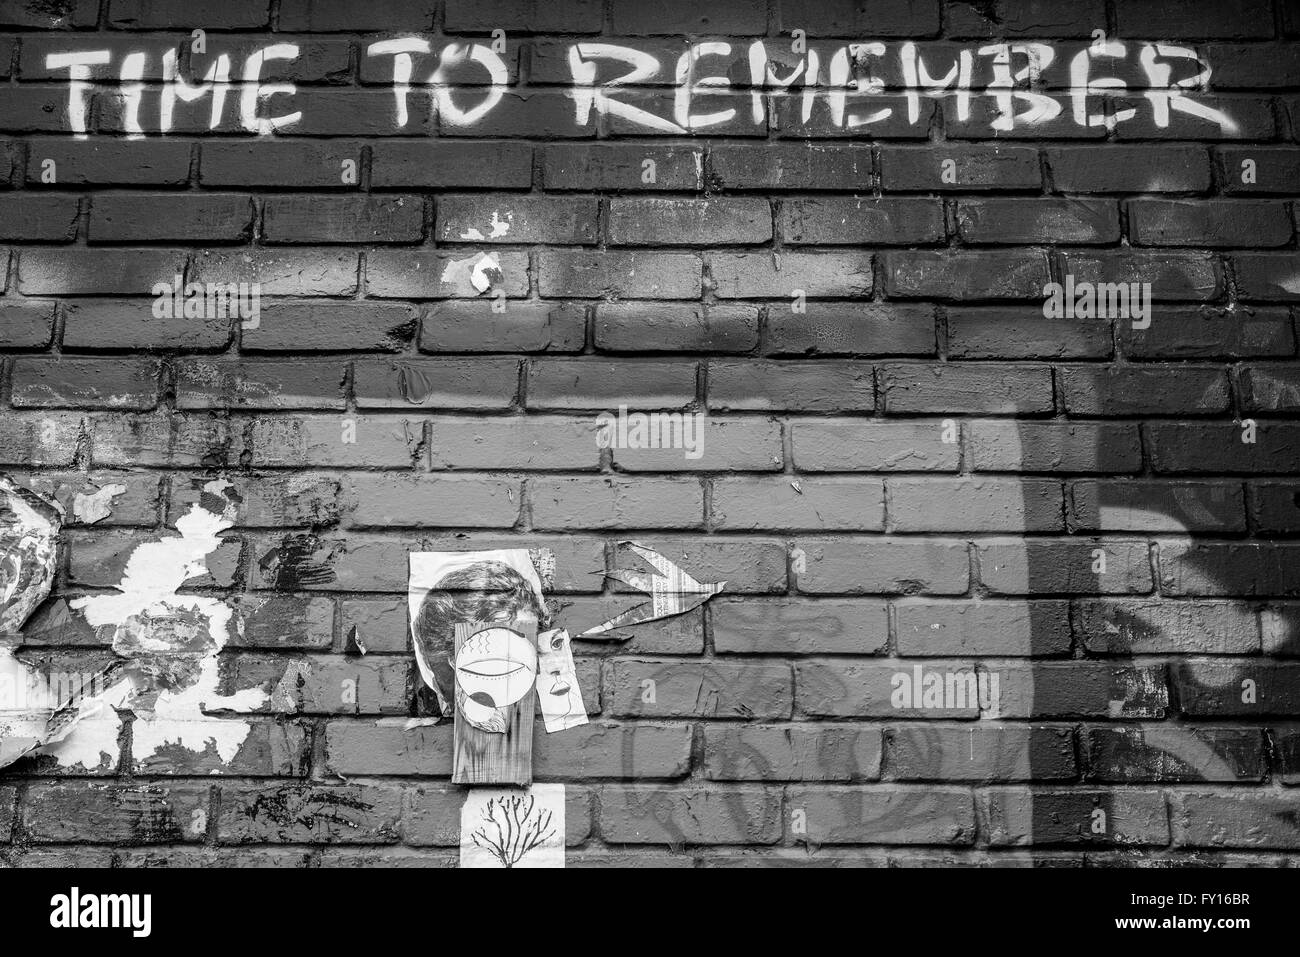 Der Satz "Zeit zu erinnern" in weißer Tinte auf eine Mauer geschrieben Stockfoto